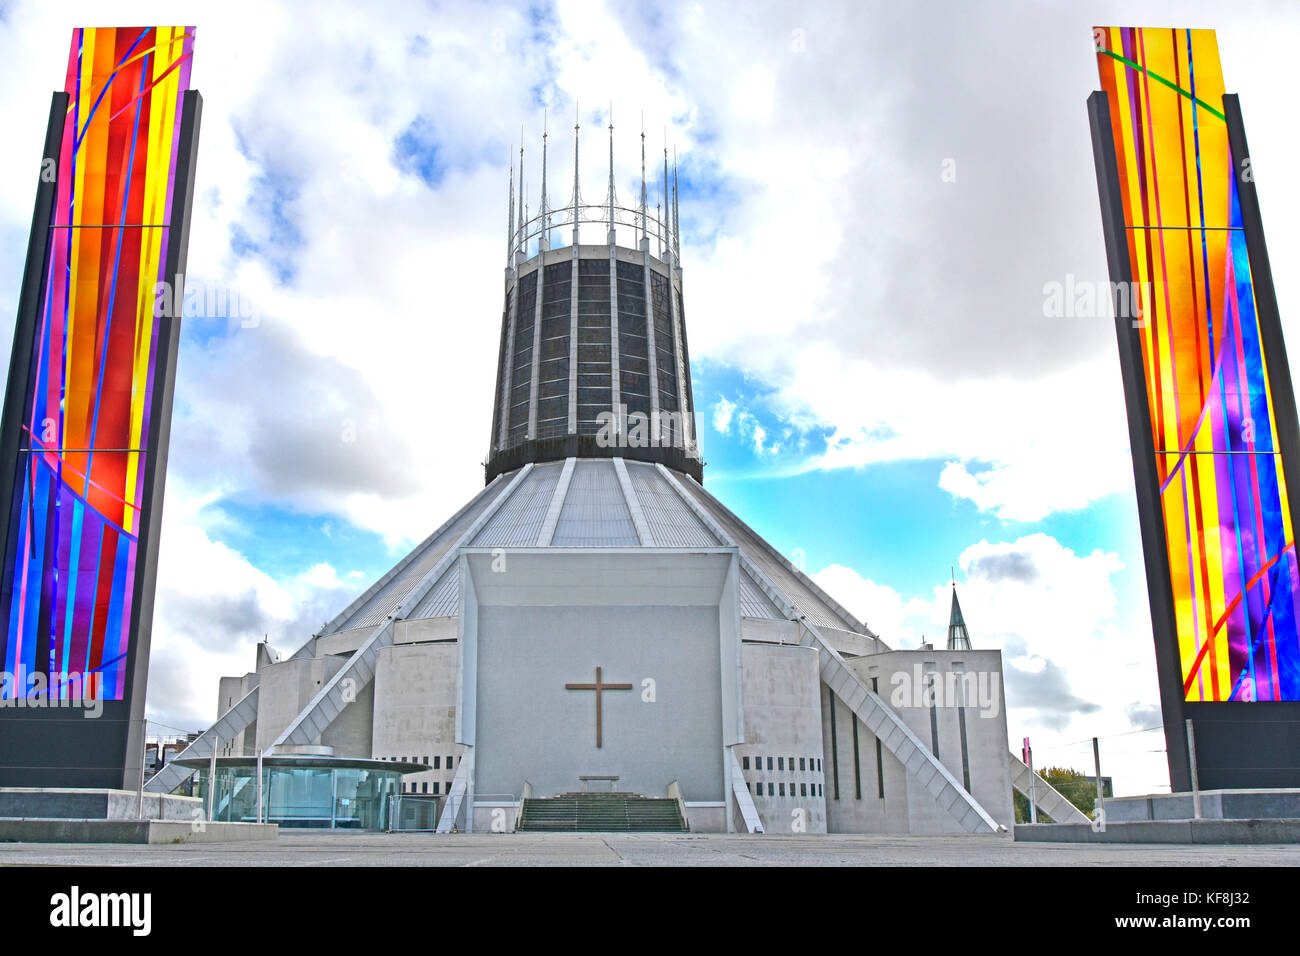 Moderne Architektur & Design der Catholic Liverpool Metropolitan Cathedral kirche außen von Buntglasscheiben Merseyside England UK flankiert Stockfoto